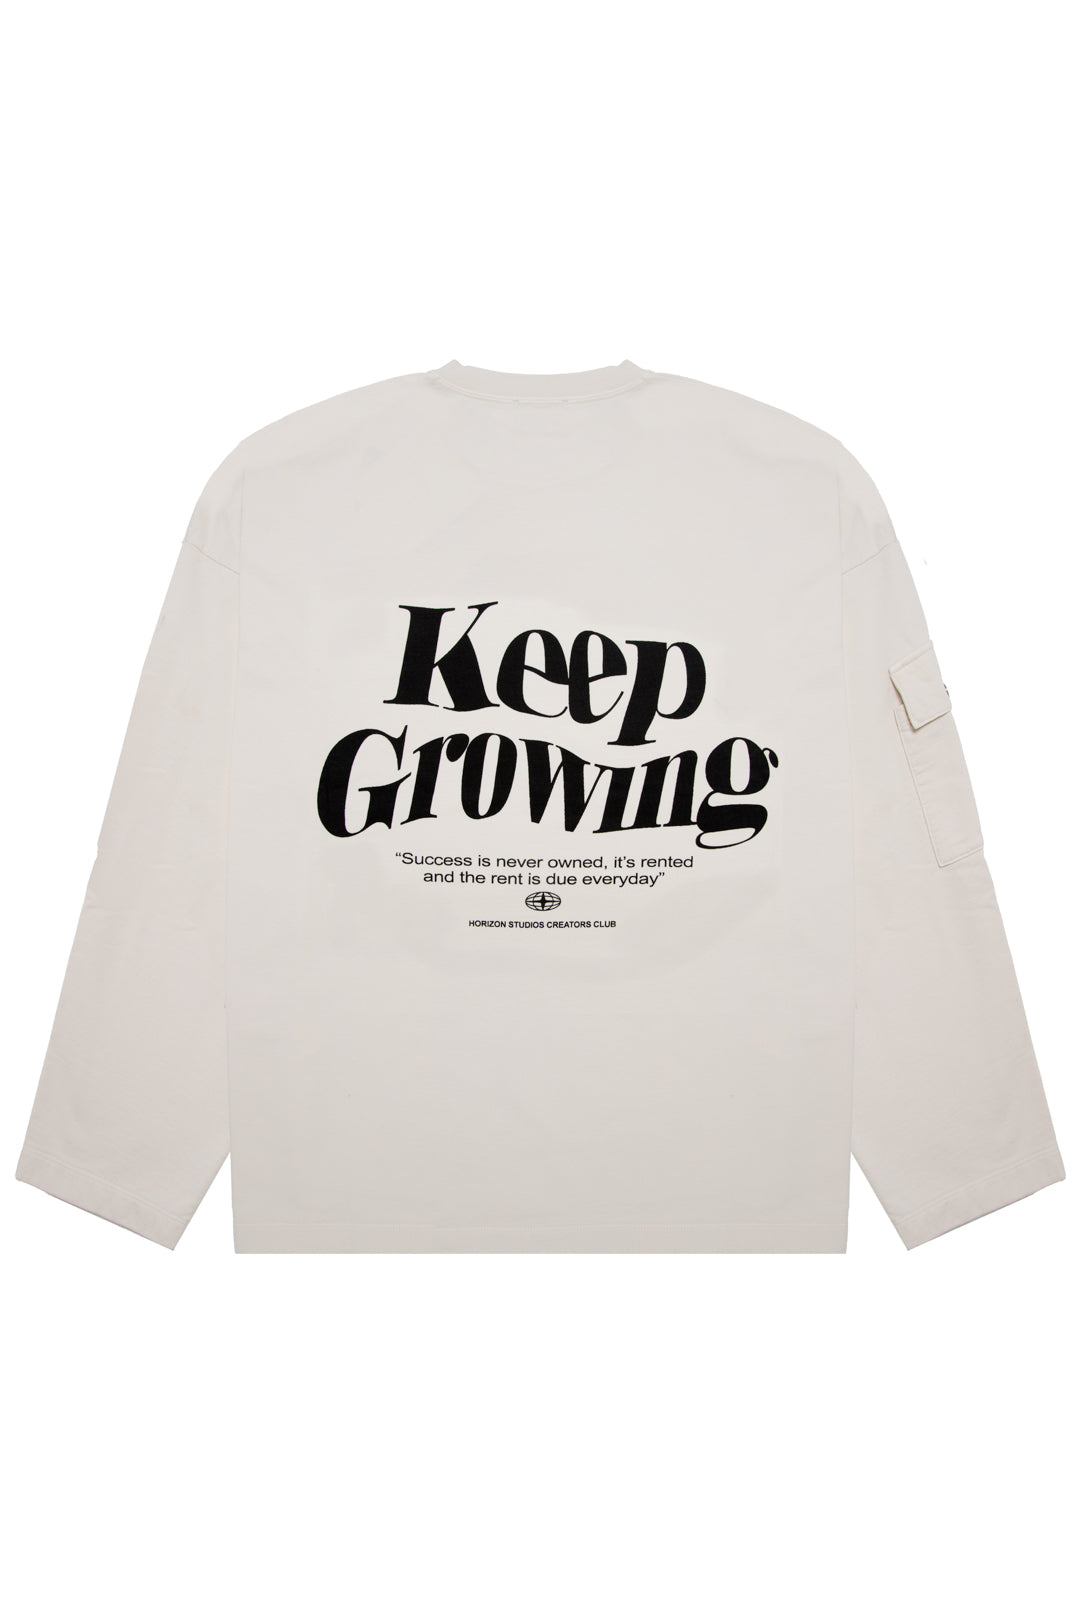 BEIGE “KEEP GROWING” CREWNECK